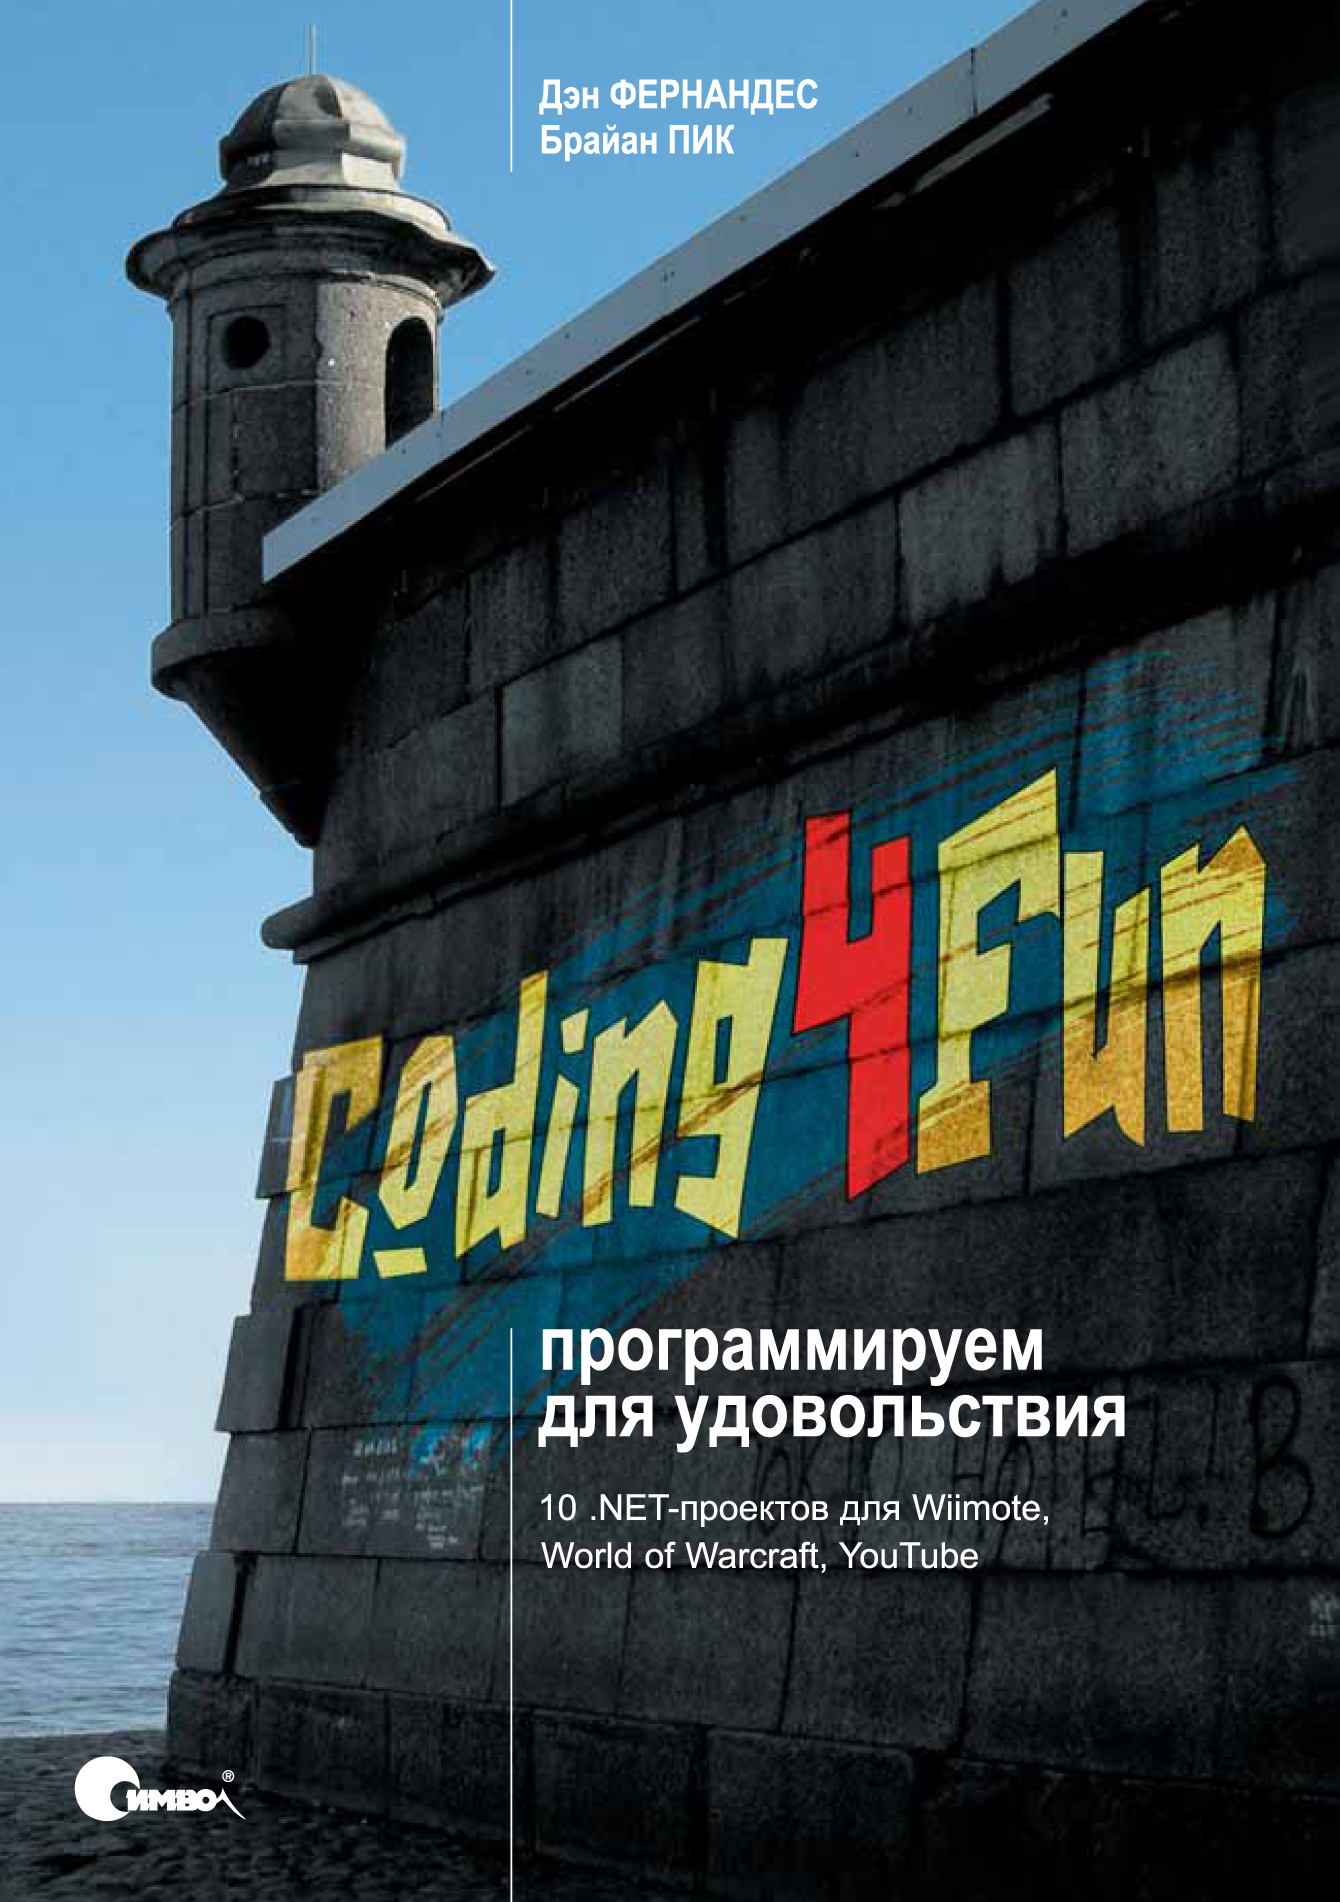 Coding4Fun: программируем для удовольствия, 2009, Фернандес Д., Пик Б.